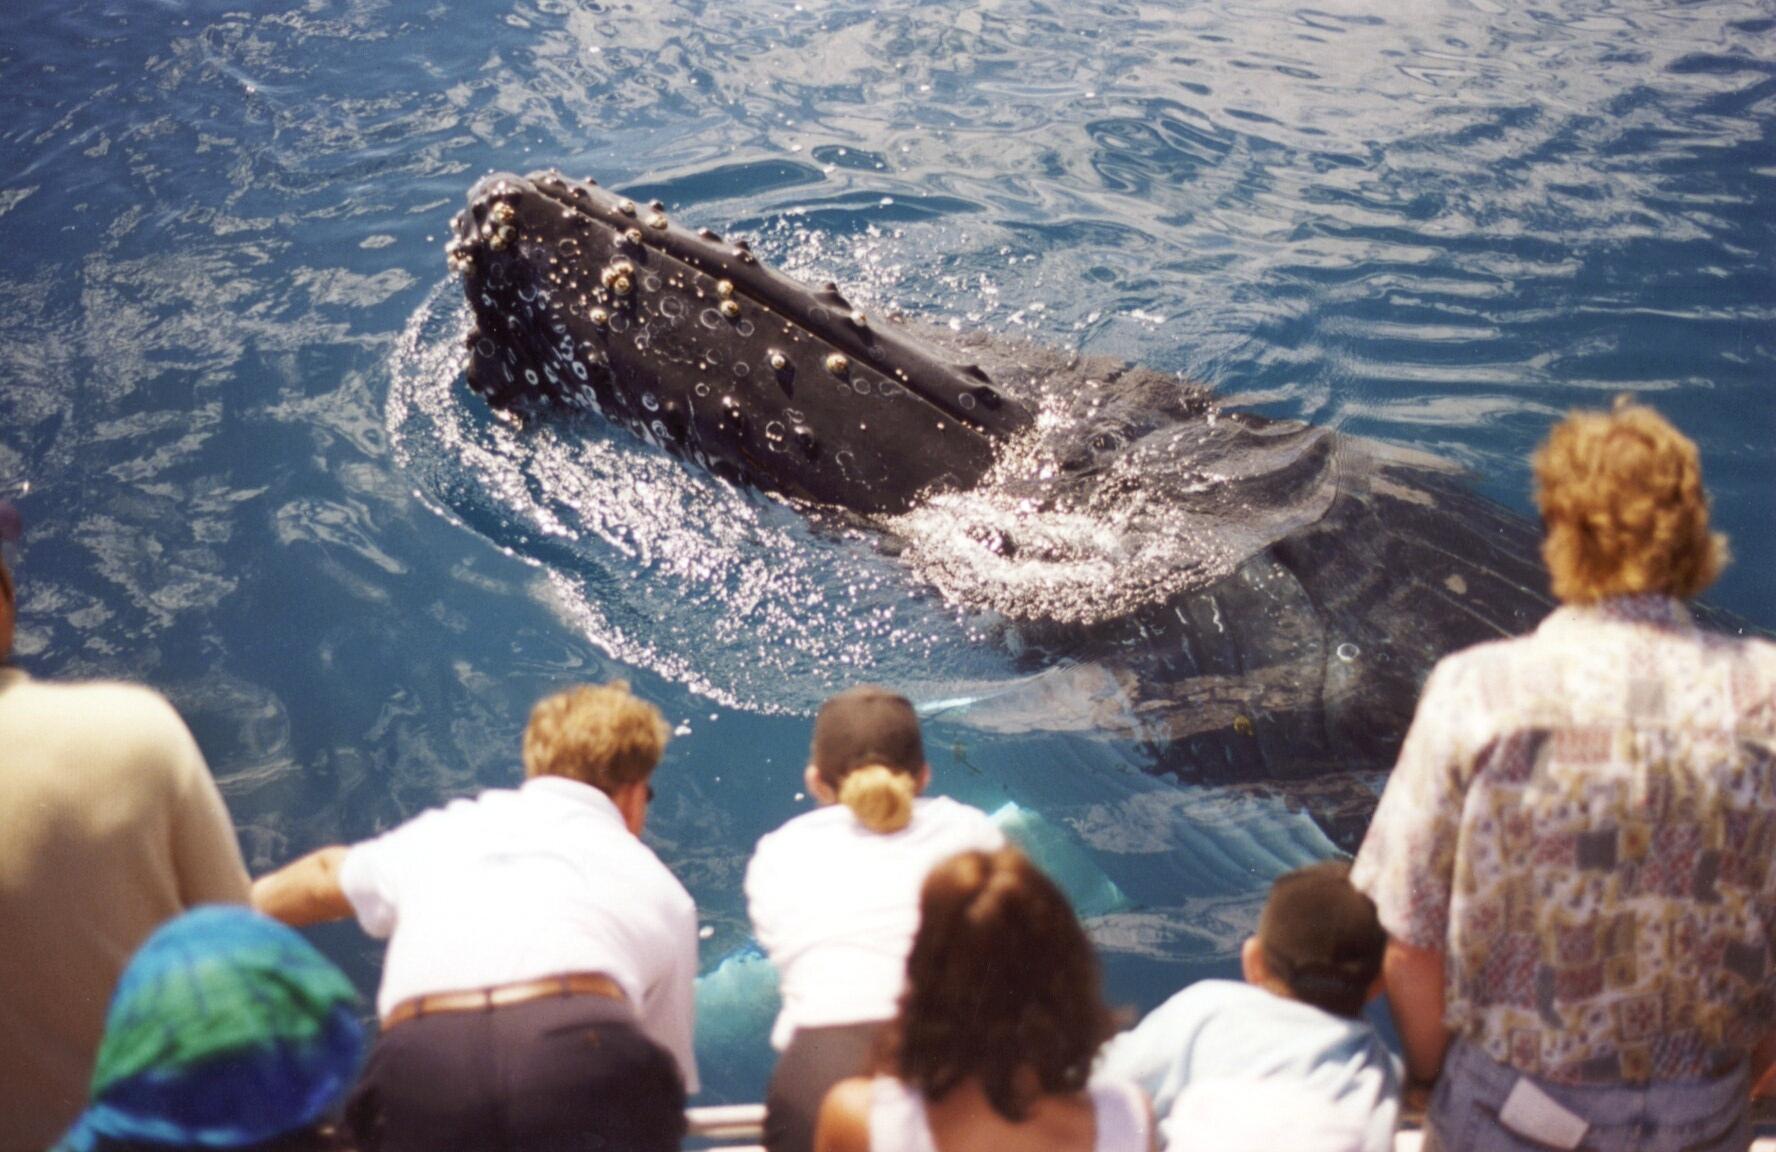 Whale alongside Boat